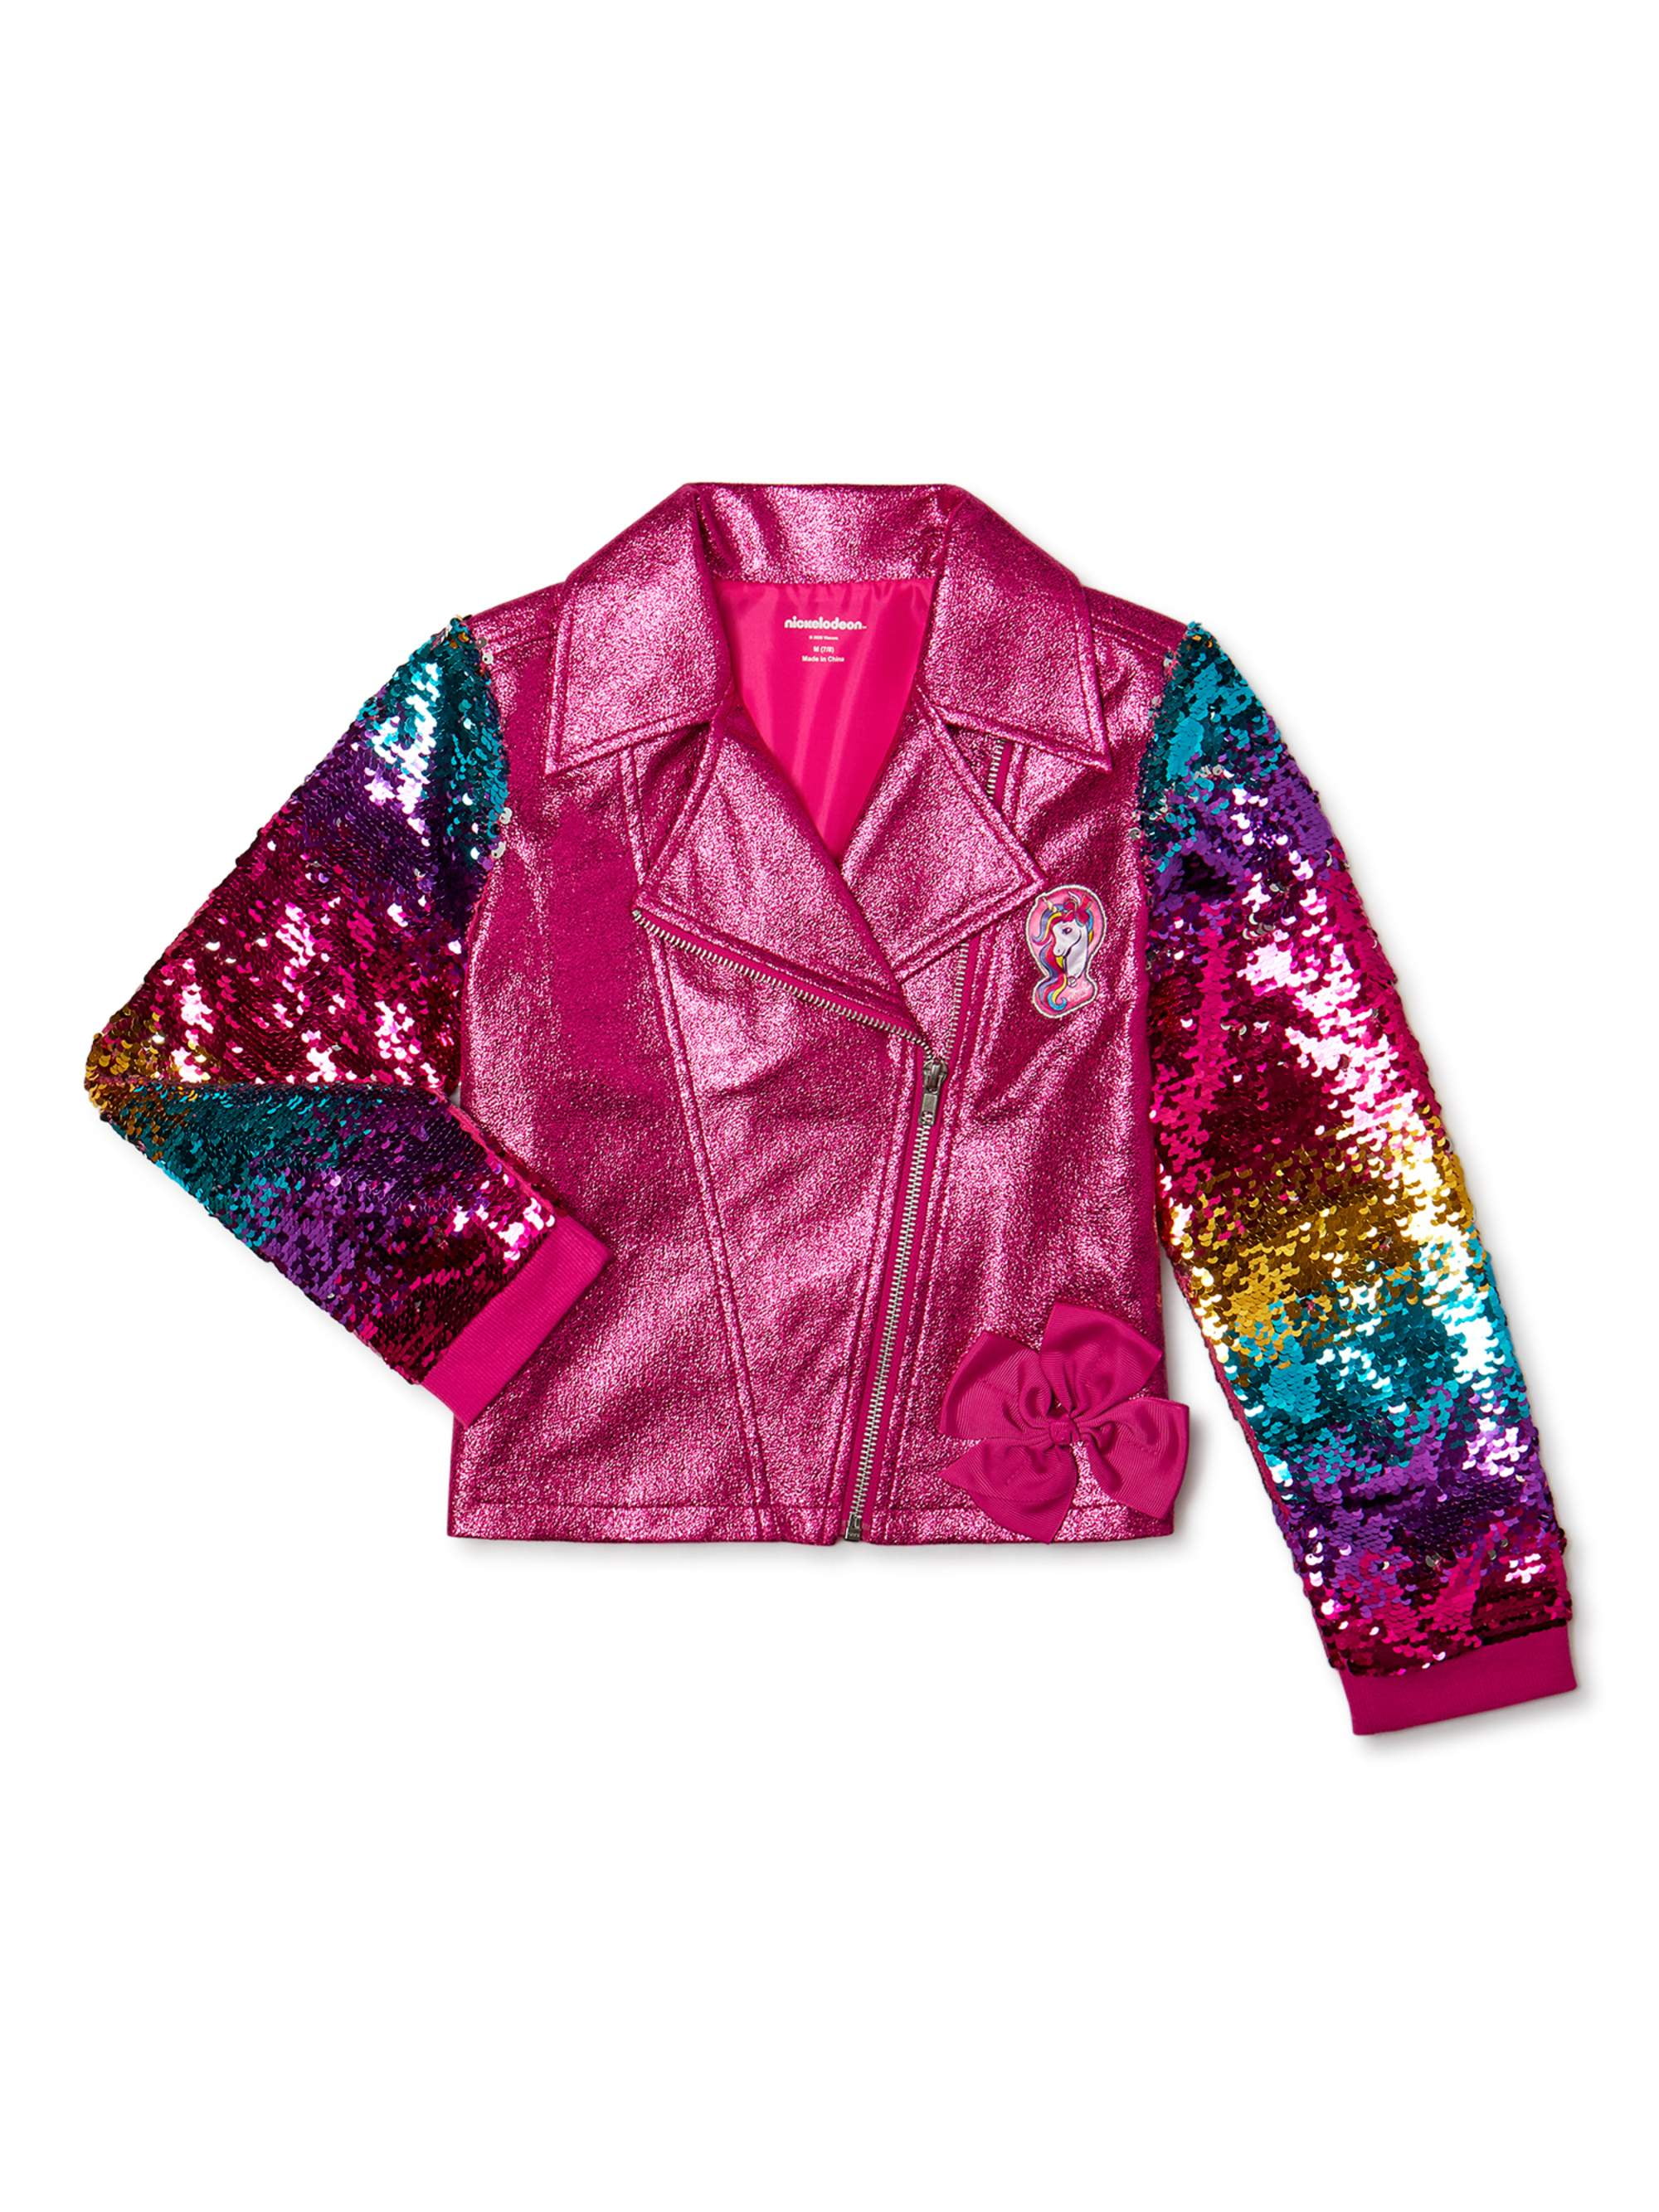 XL 14/16 Jojos Closet Girls JoJo Siwa Sequin Jacket